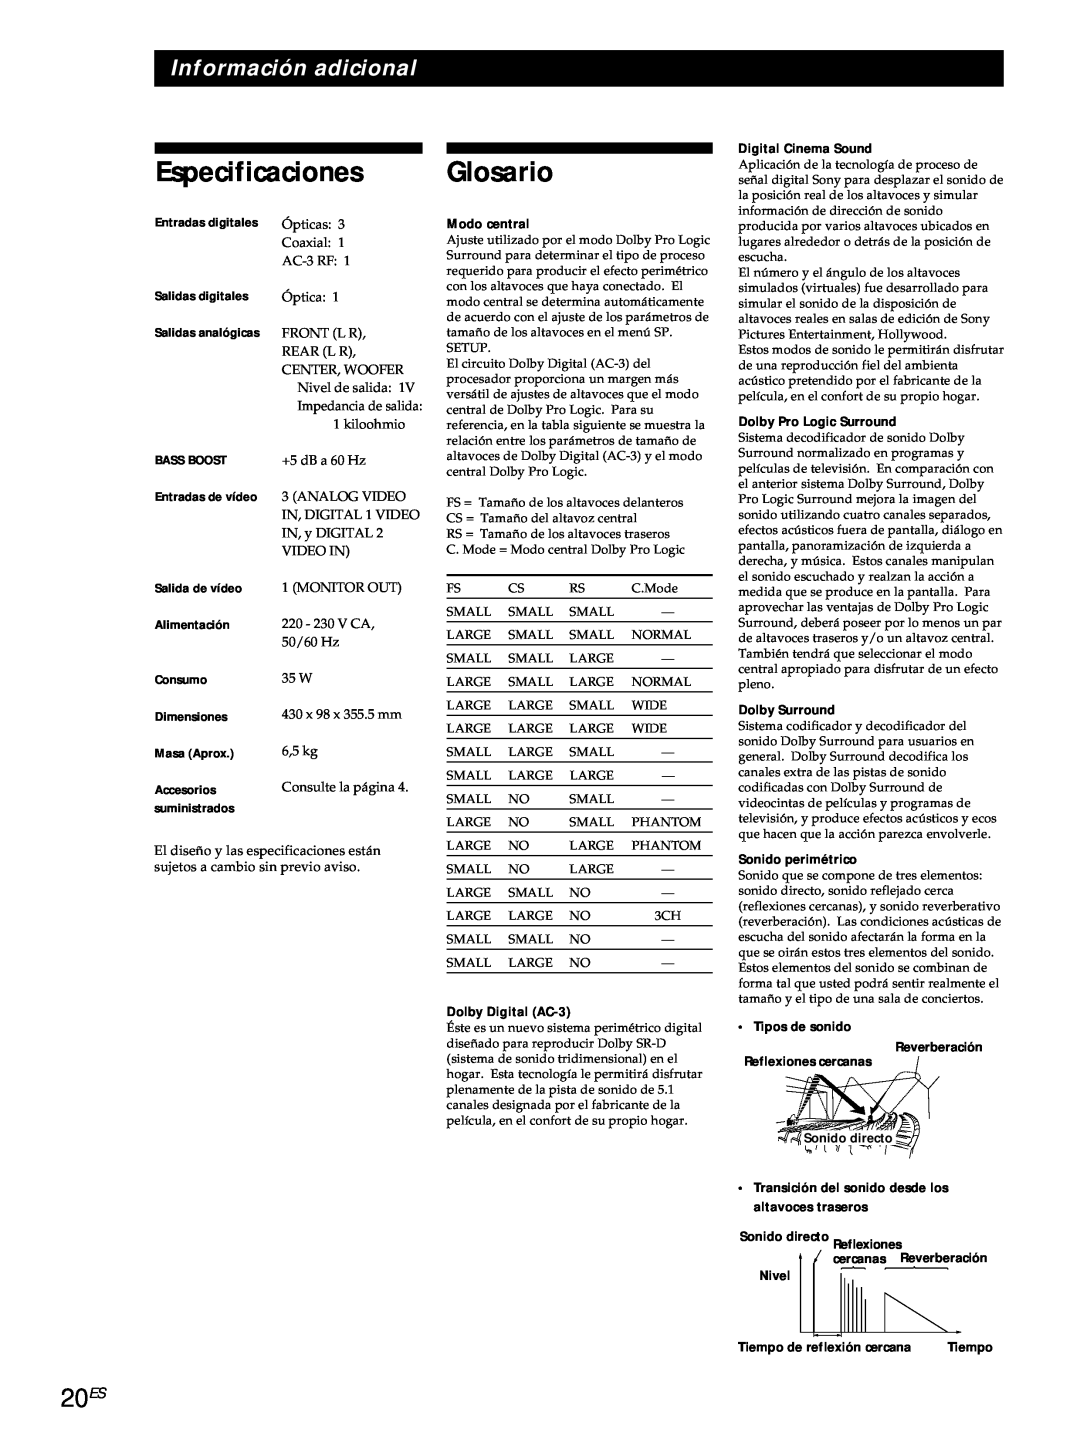 Sony SDP-E800 operating instructions Especificaciones Glosario, 20ES, Información adicional 